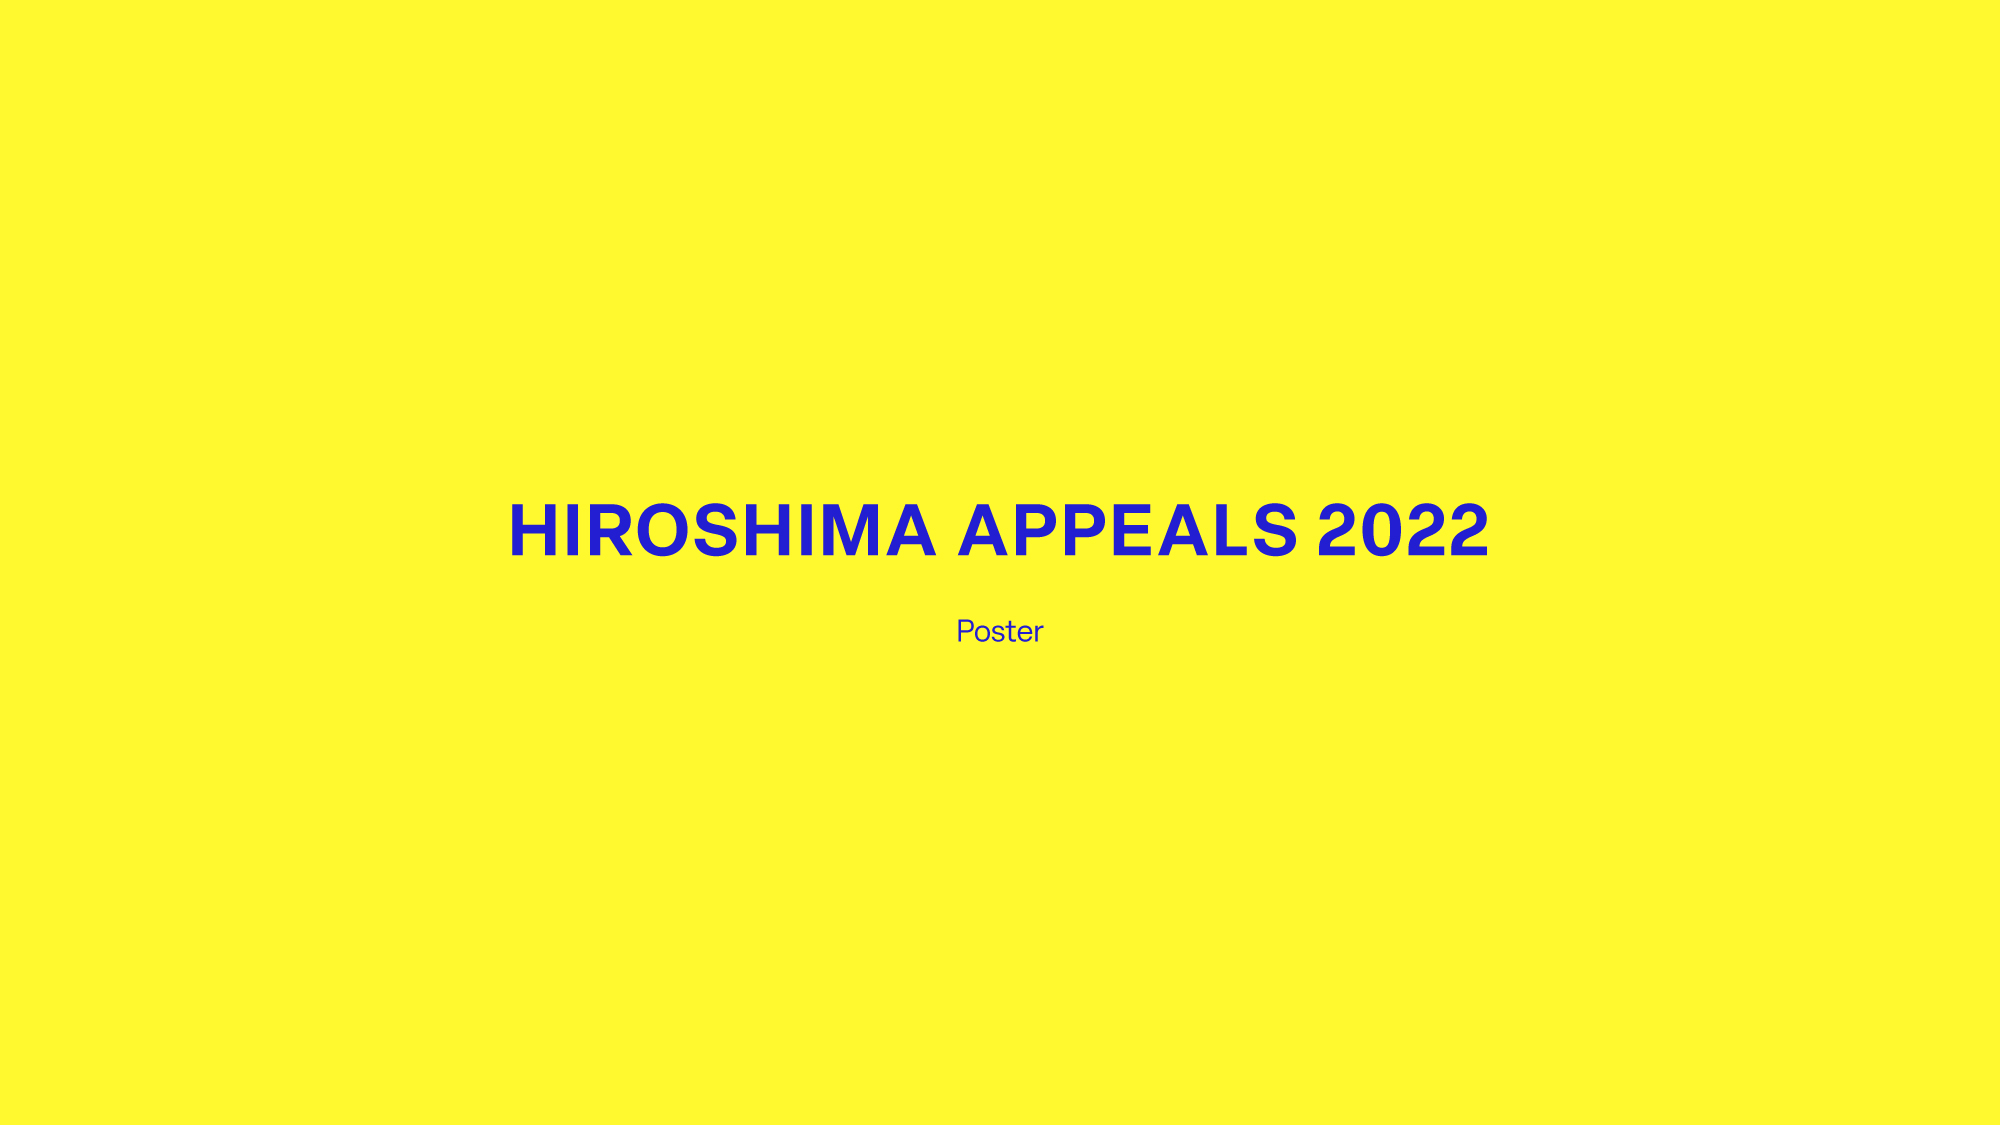 佐藤可士和氏による平和ポスター「ヒロシマ・アピールズ 2022」完成